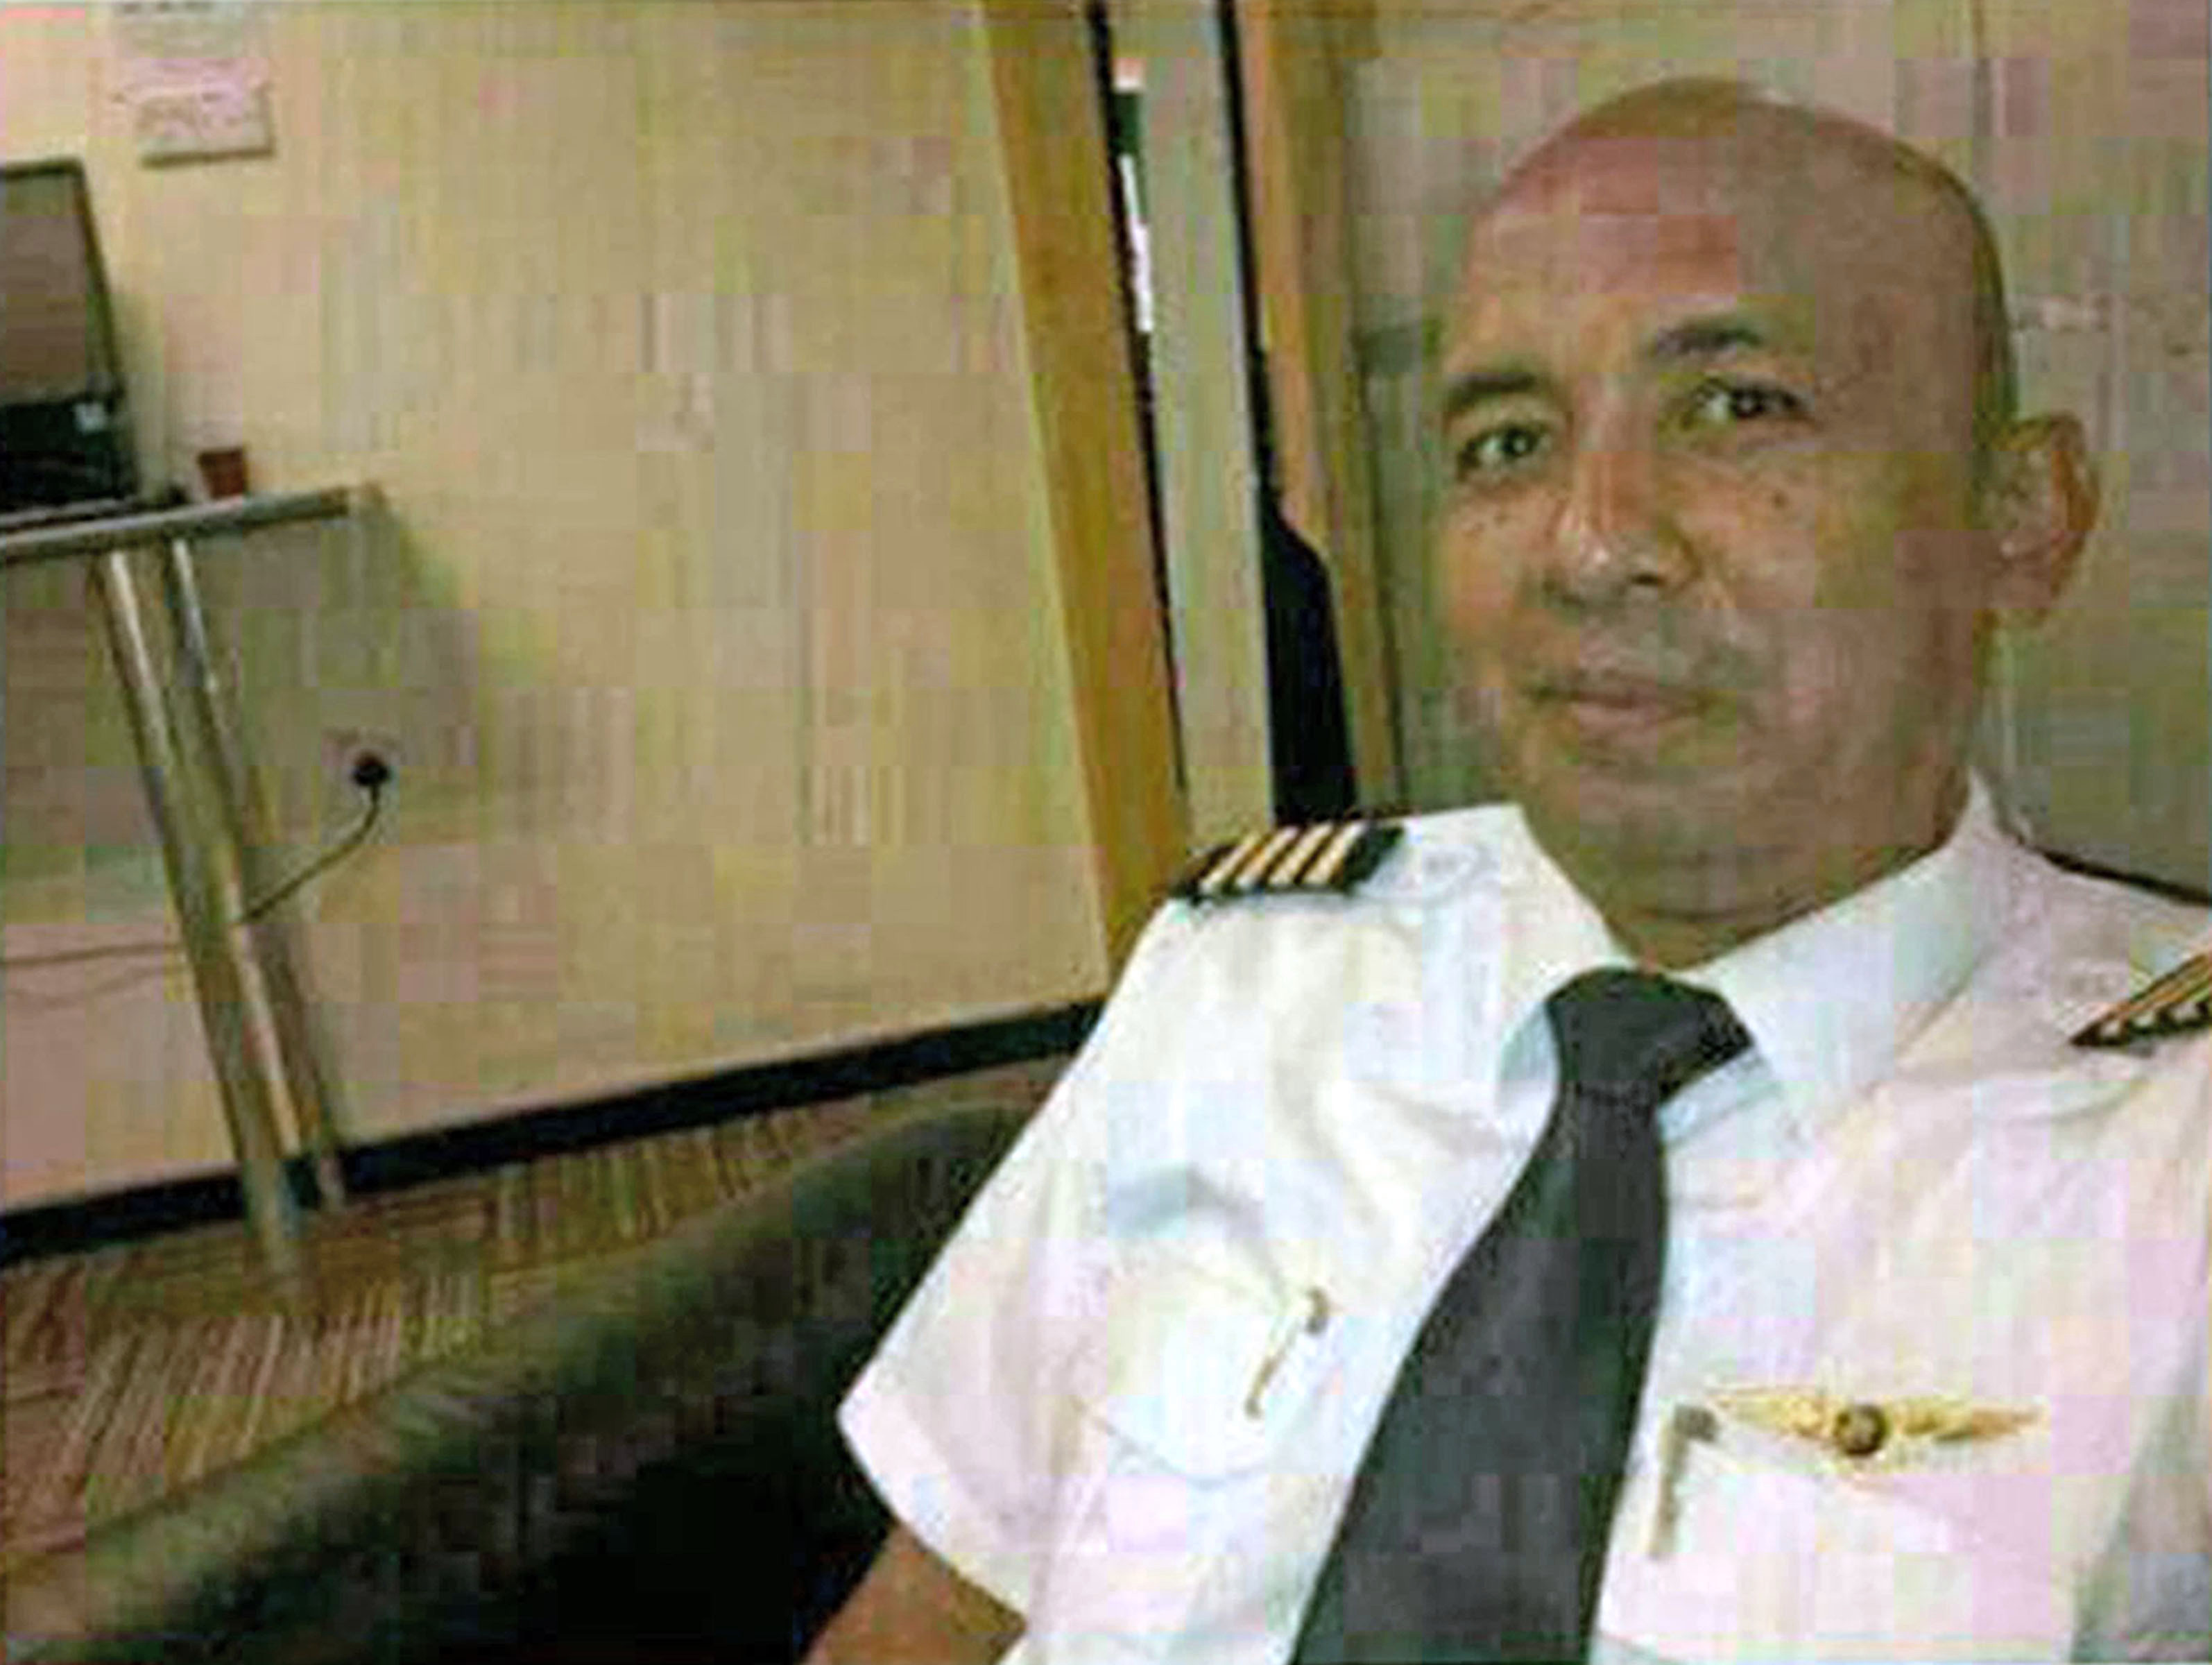 Одна из теорий заключается в том, что капитан Захария Ахмад Шах преднамеренно сбил самолет в результате убийства-самоубийства